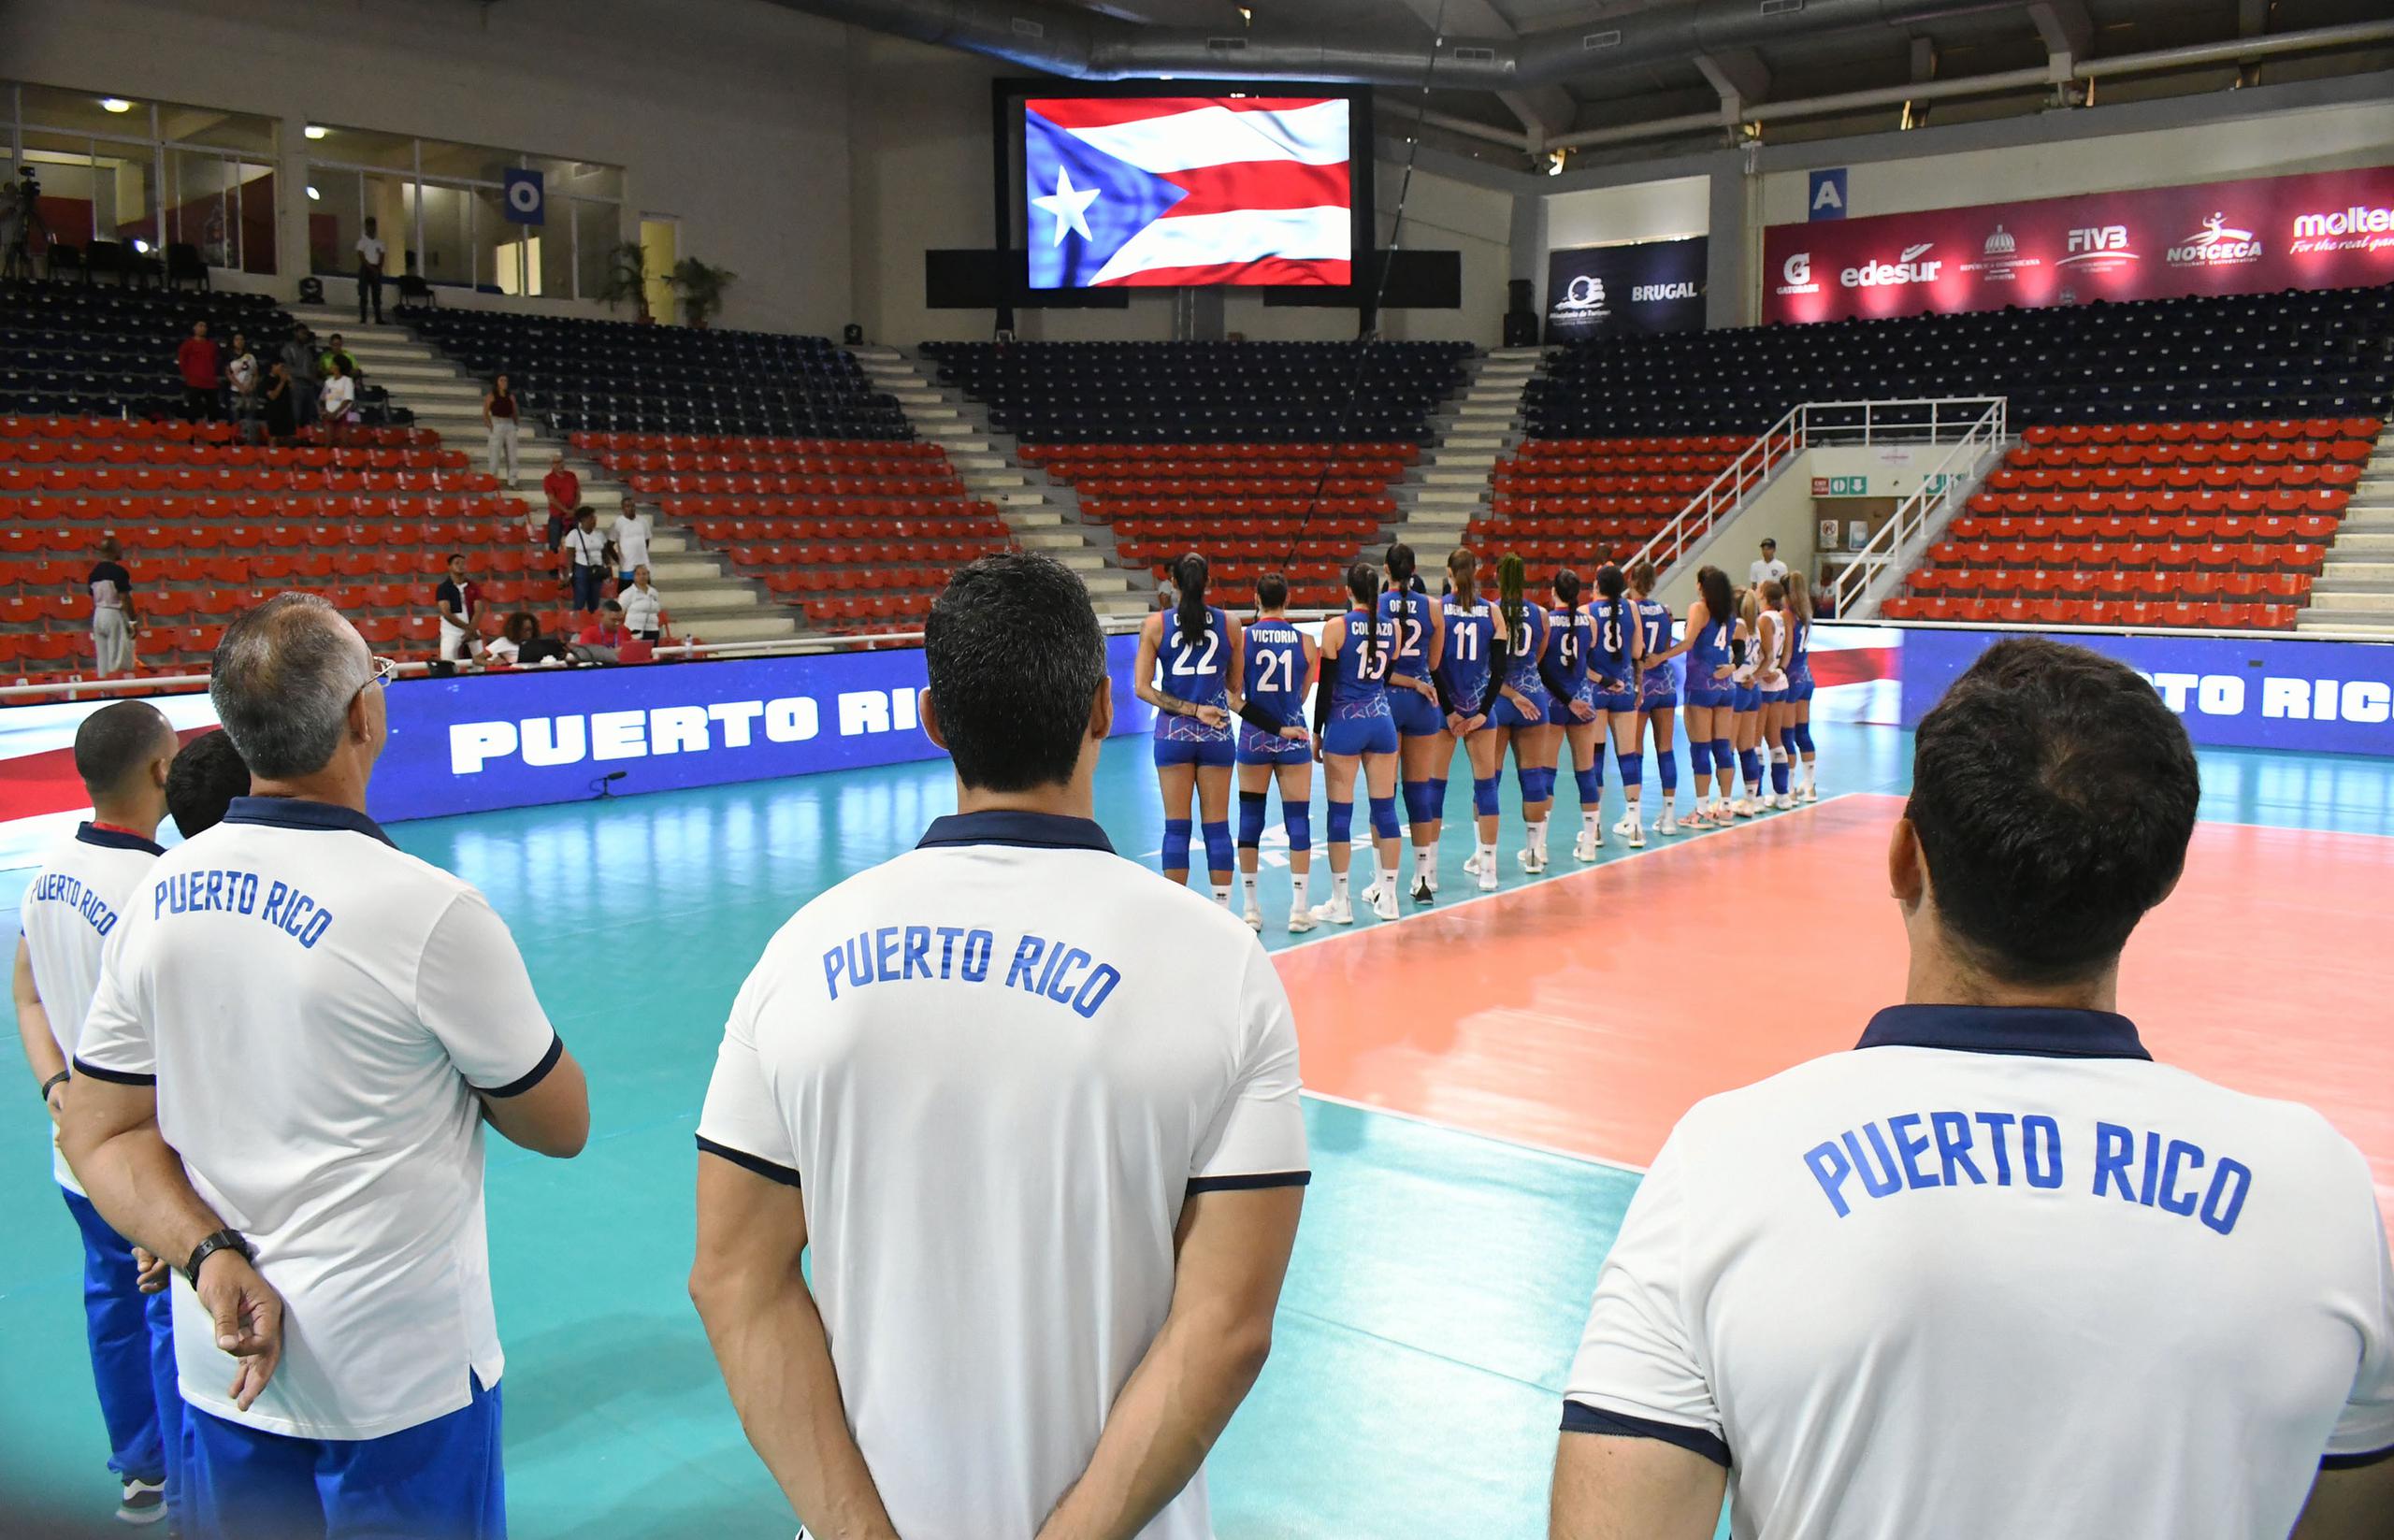 El cuerpo técnico en primer plano y las jugadora al fondo siguen el protocolo del himno nacional previo al juego ante Canadá.